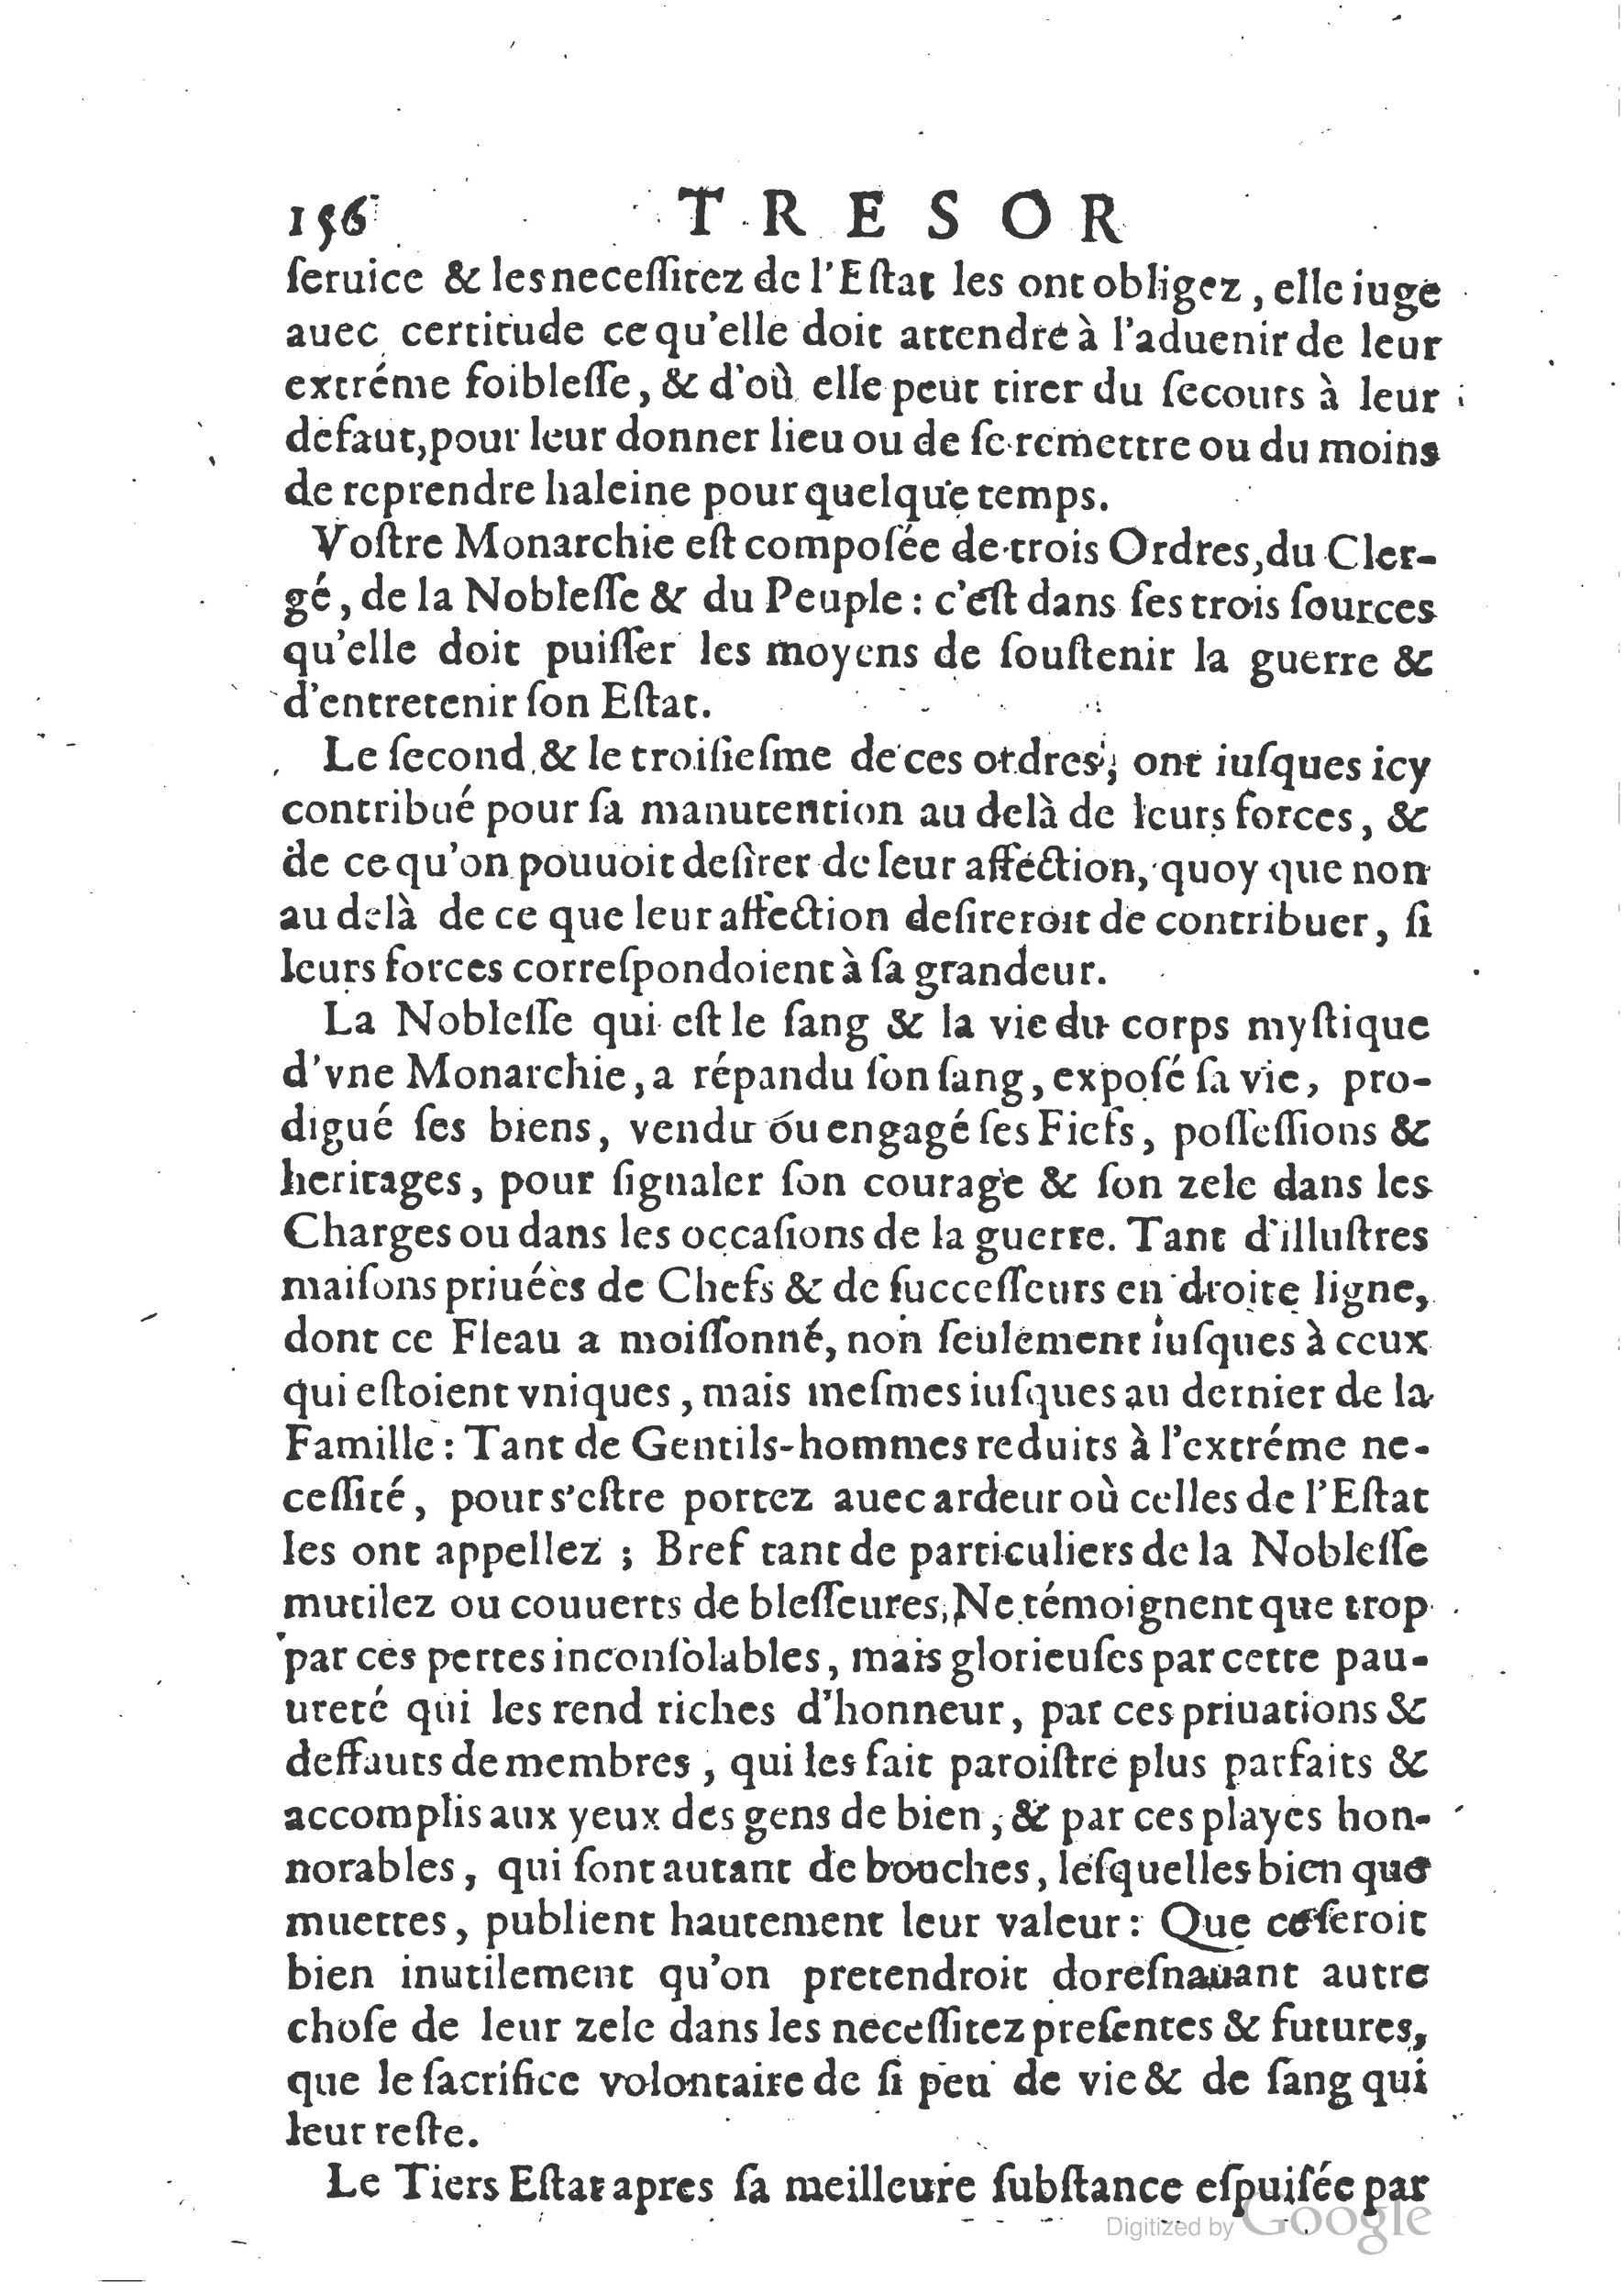 1654 Trésor des harangues, remontrances et oraisons funèbres Robin_BM Lyon_Page_395.jpg